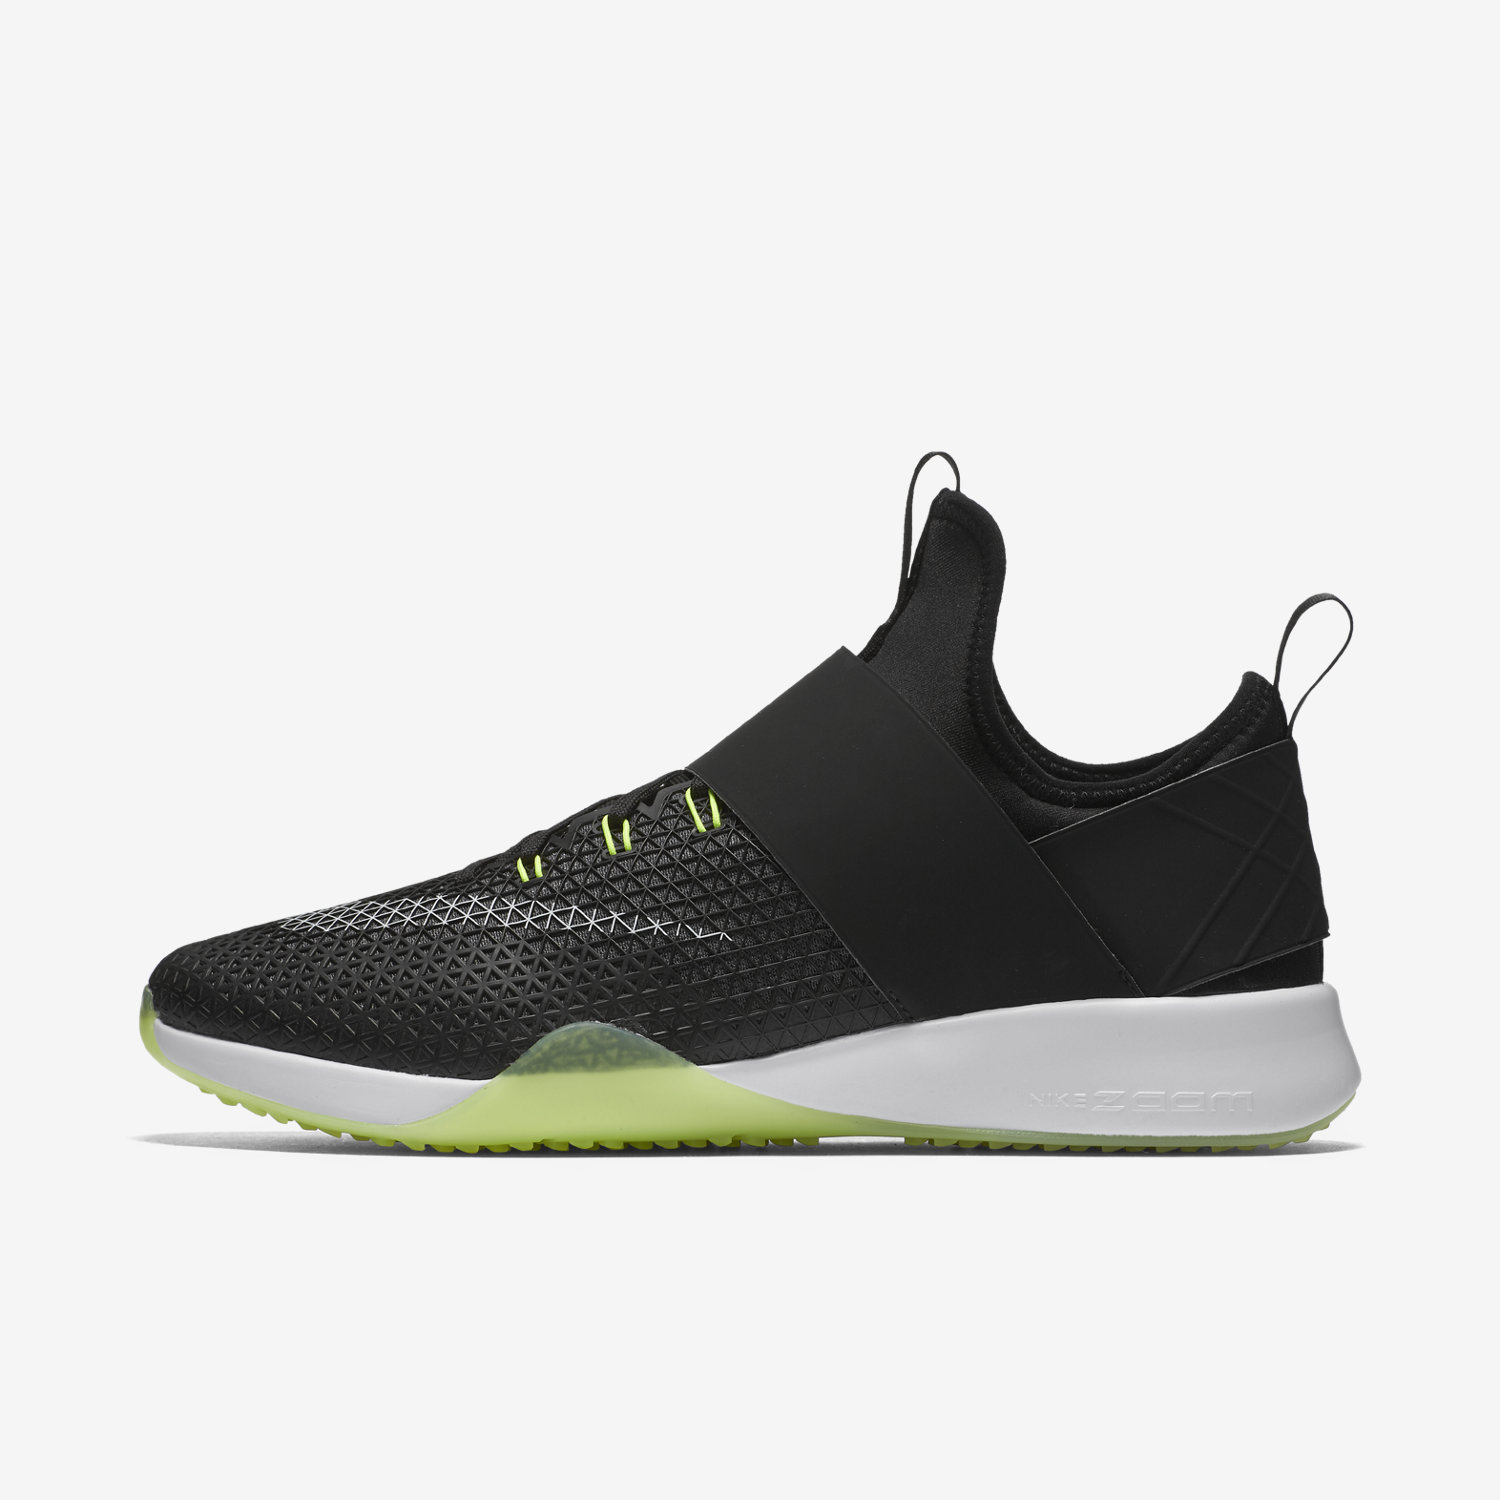 αθλητικα παπουτσια γυναικεια Nike Air Zoom Strong μαυρα/βαθυ γκρι/ασπρα 61778564LT